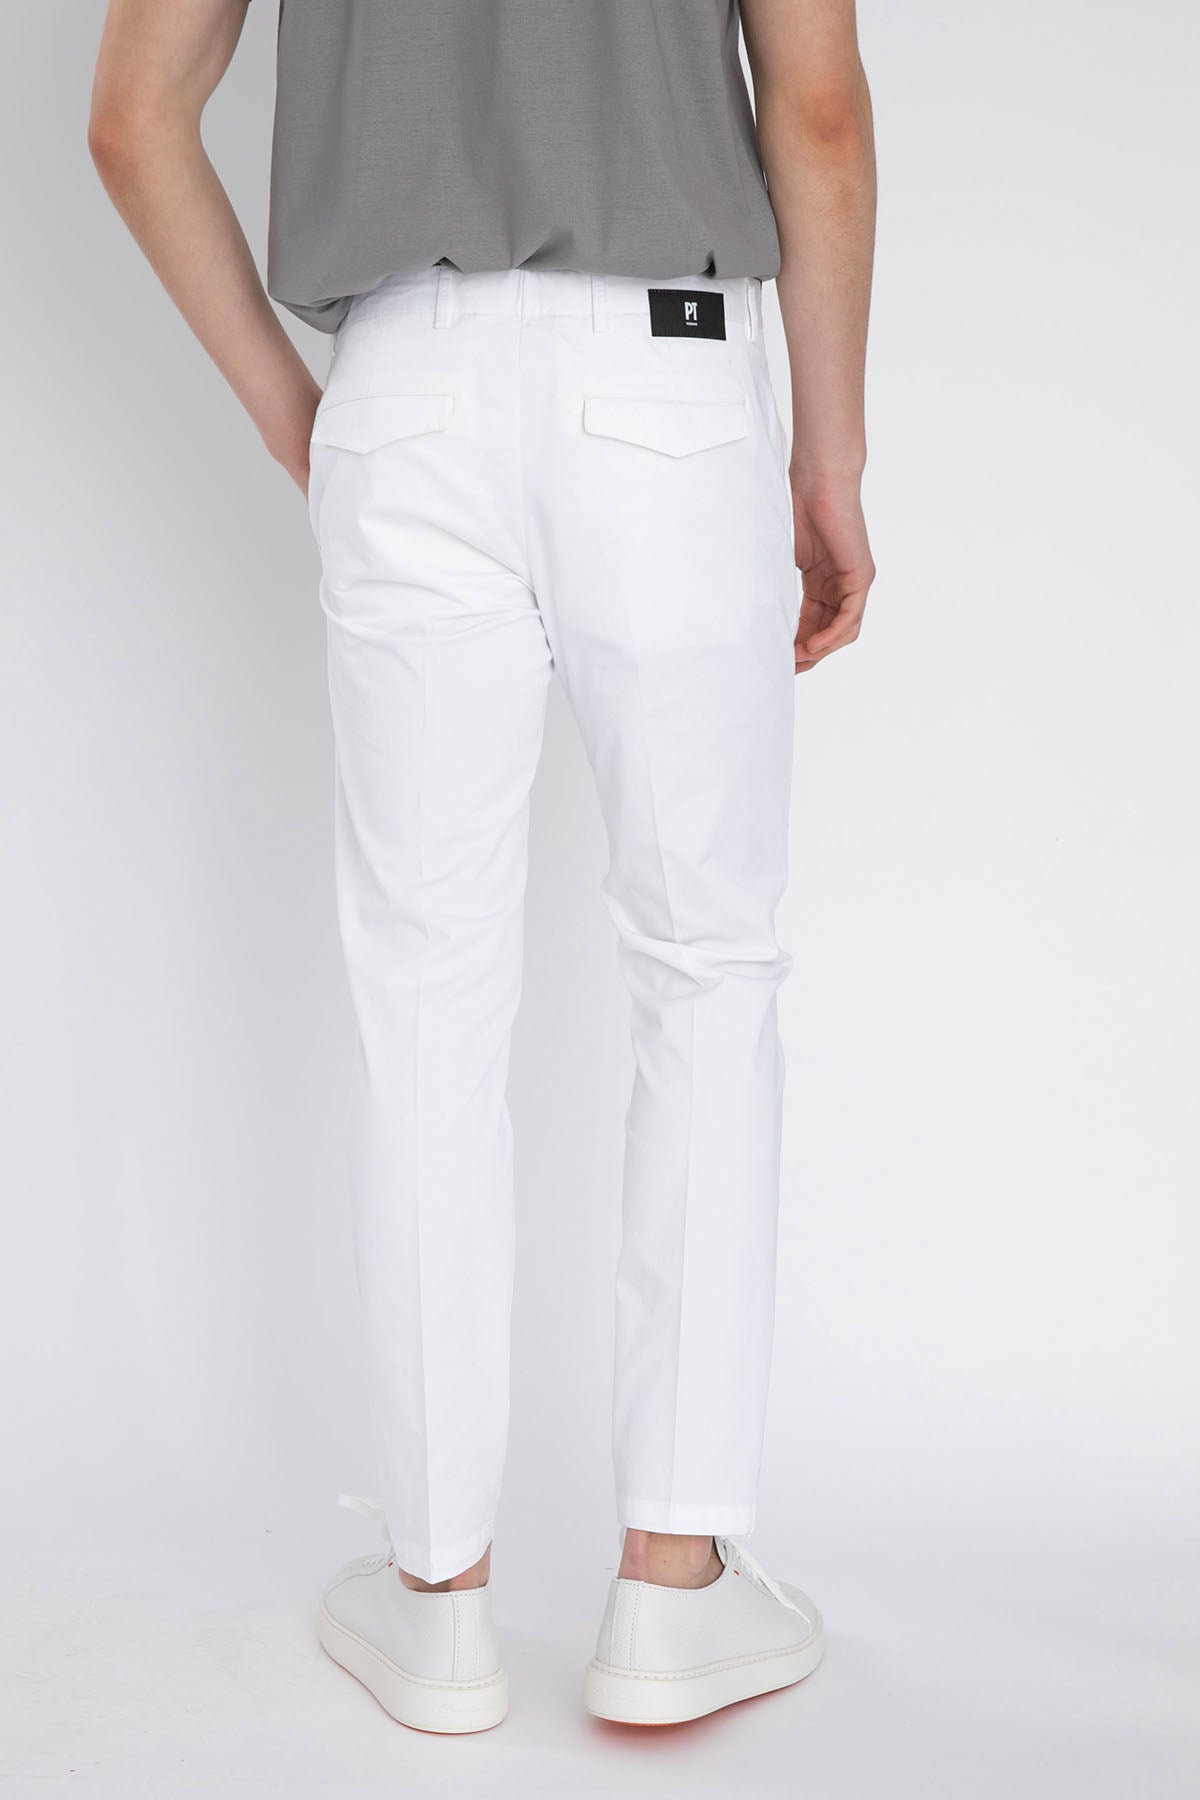 Pantaloni Torino Jungle Skinny Fit Pantolon-Libas Trendy Fashion Store